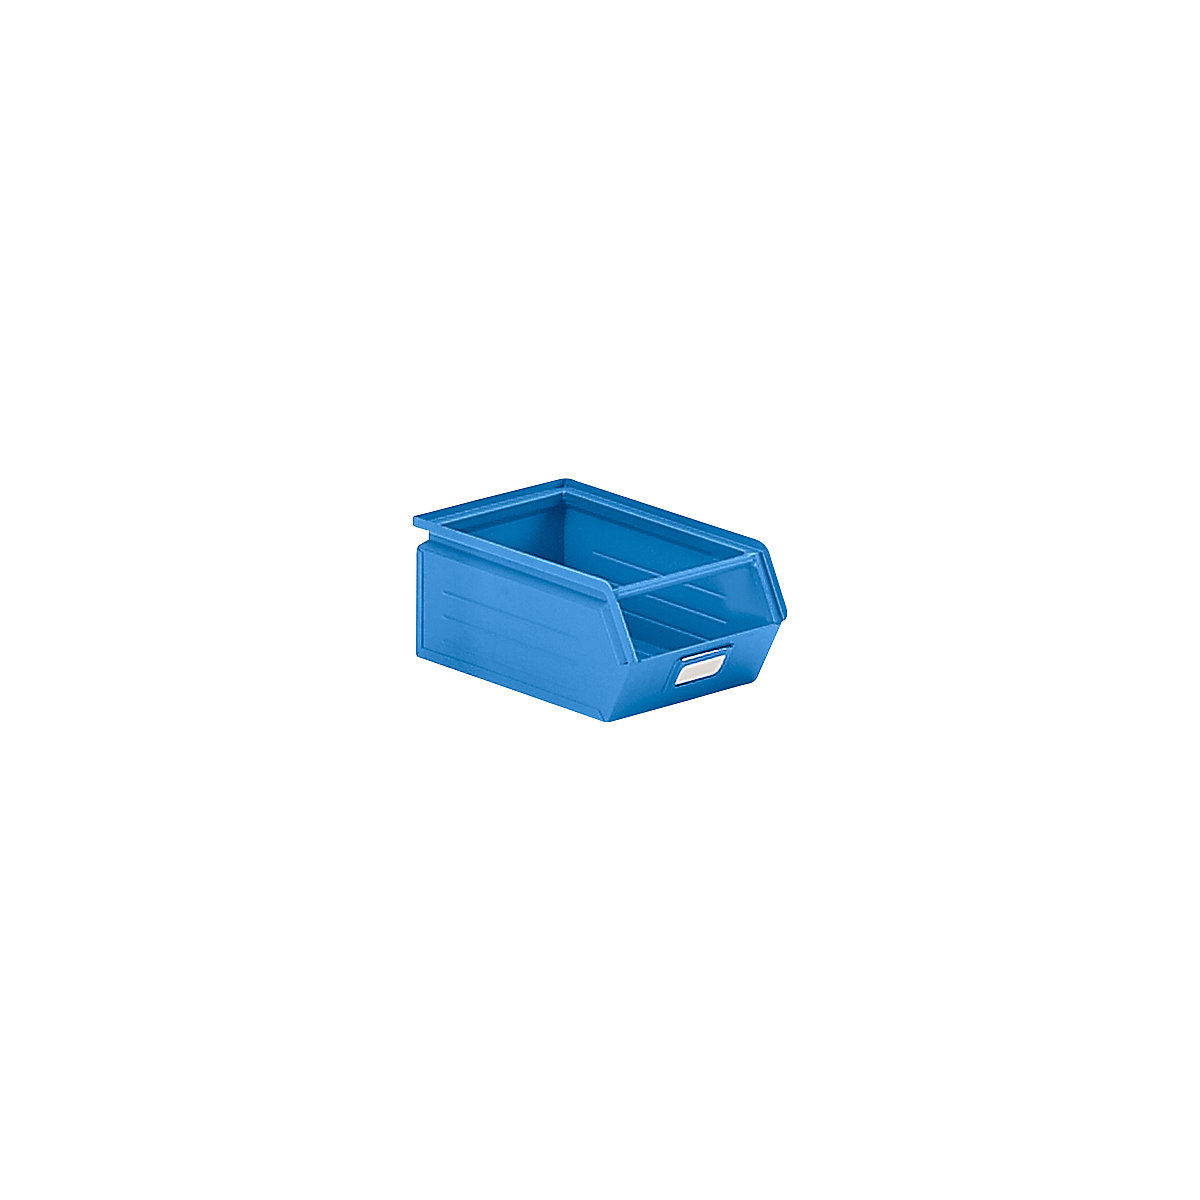 Cassettina per magazzinaggio in lamiera d'acciaio, lungh. x largh. x alt. 350 x 210 x 145 mm, con barra di trasporto, blu chiaro-5